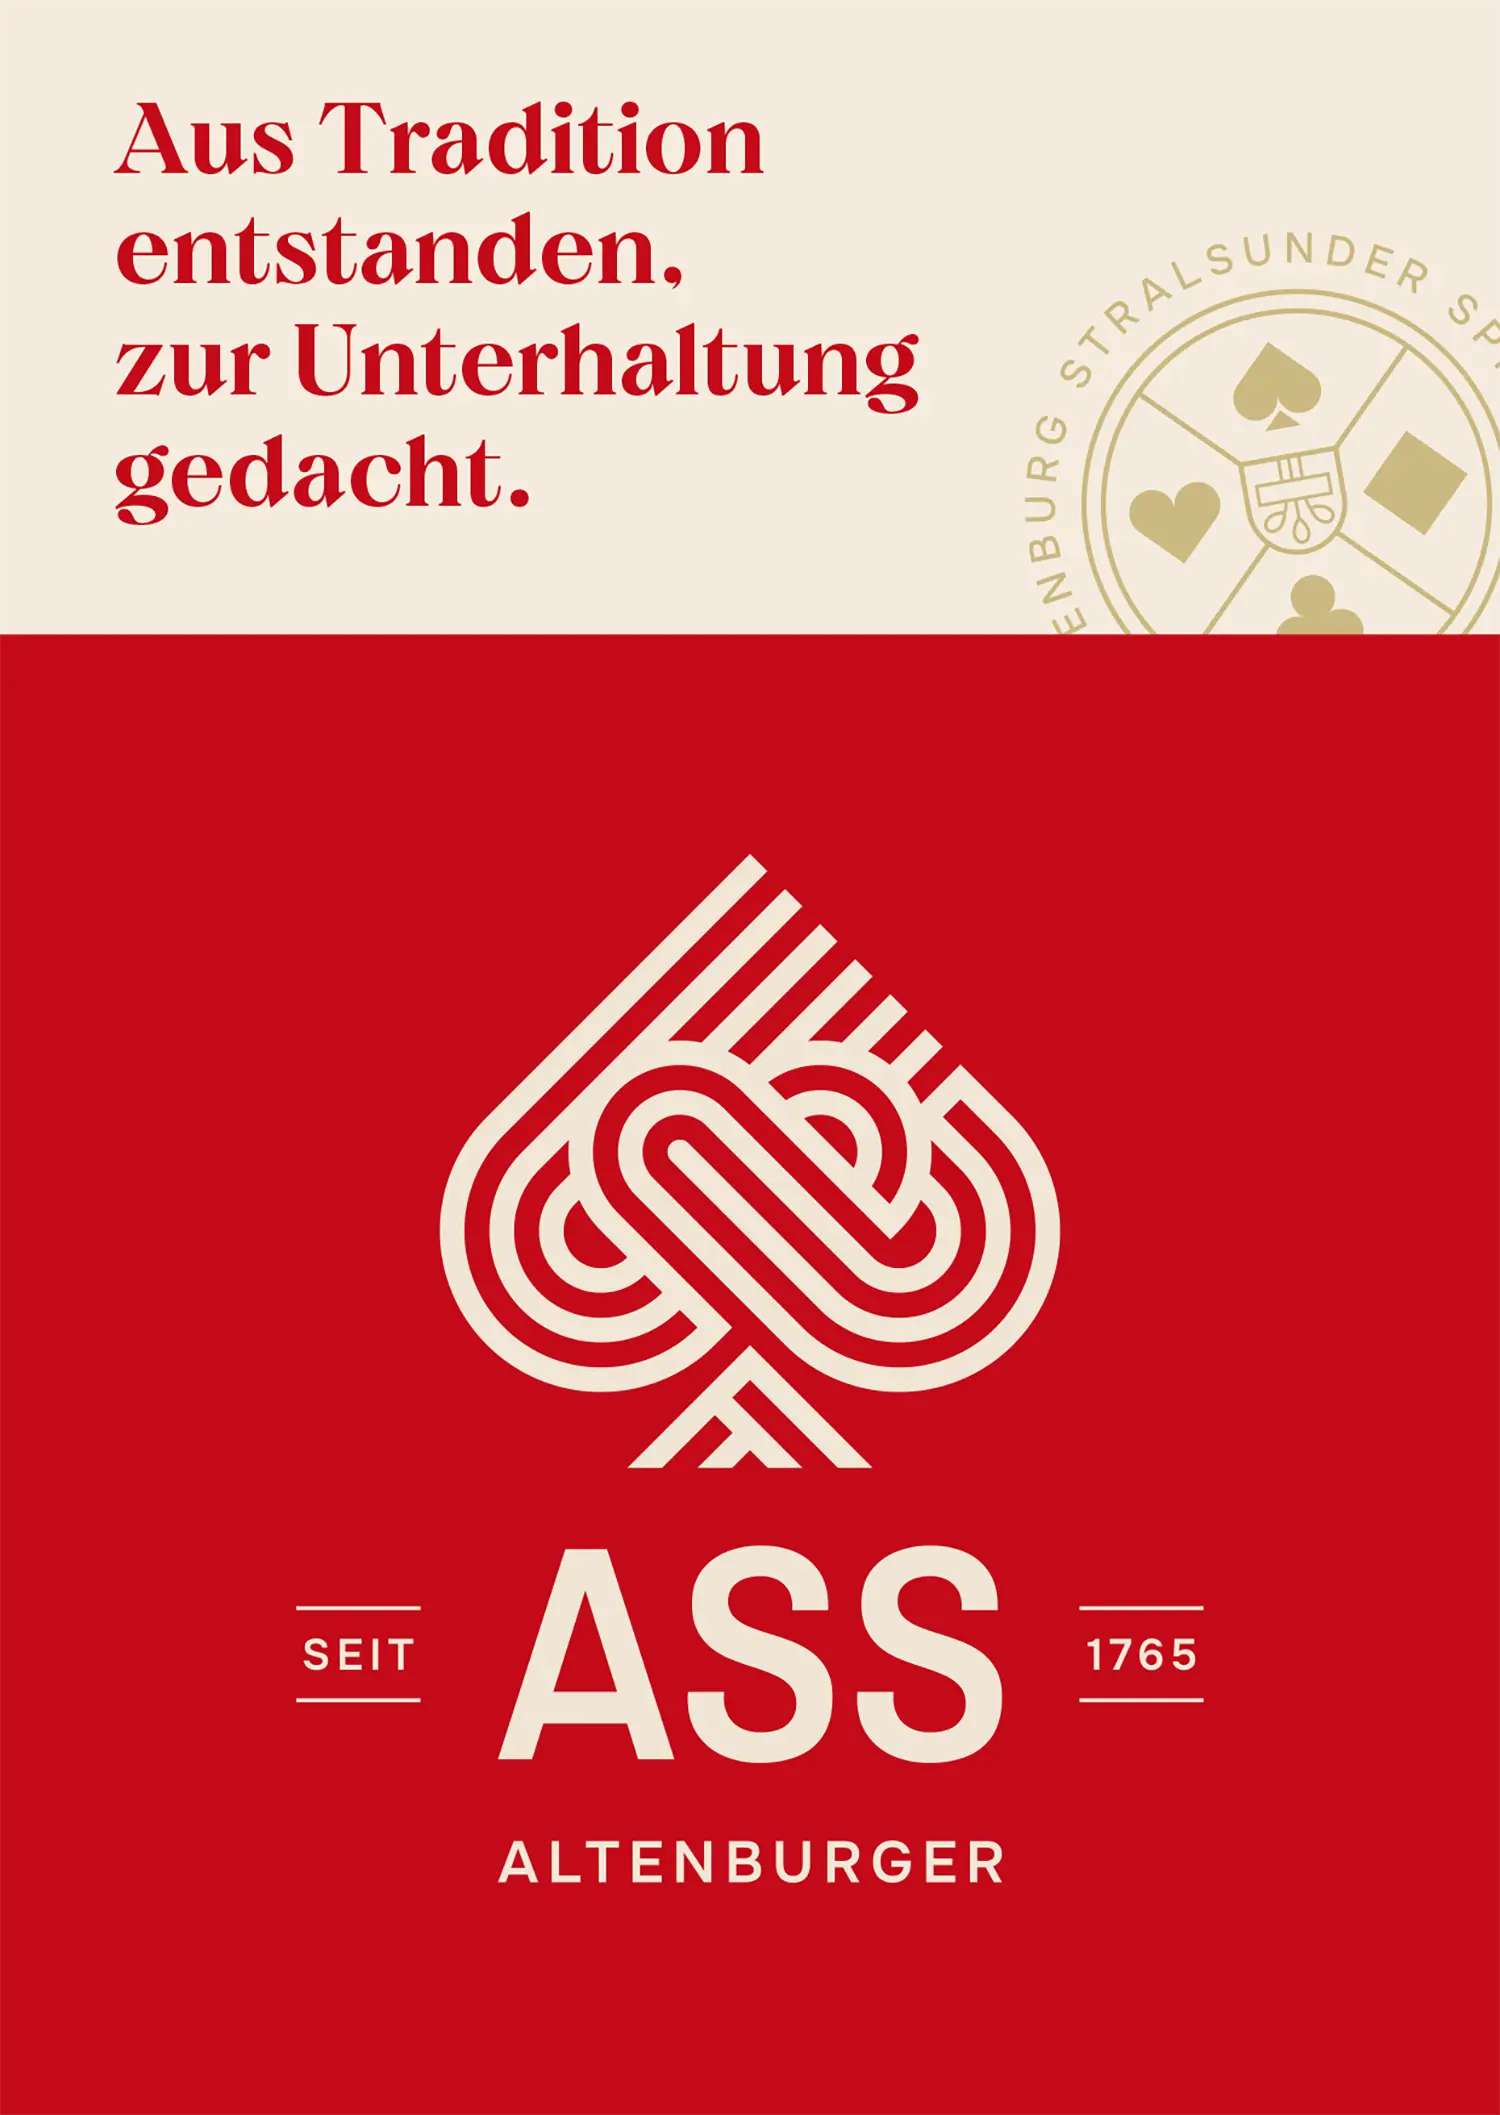 Das neue ASS Altenburger Branding ist mit einem goldenen Logo auf rotem Hintergrund zu sehen.